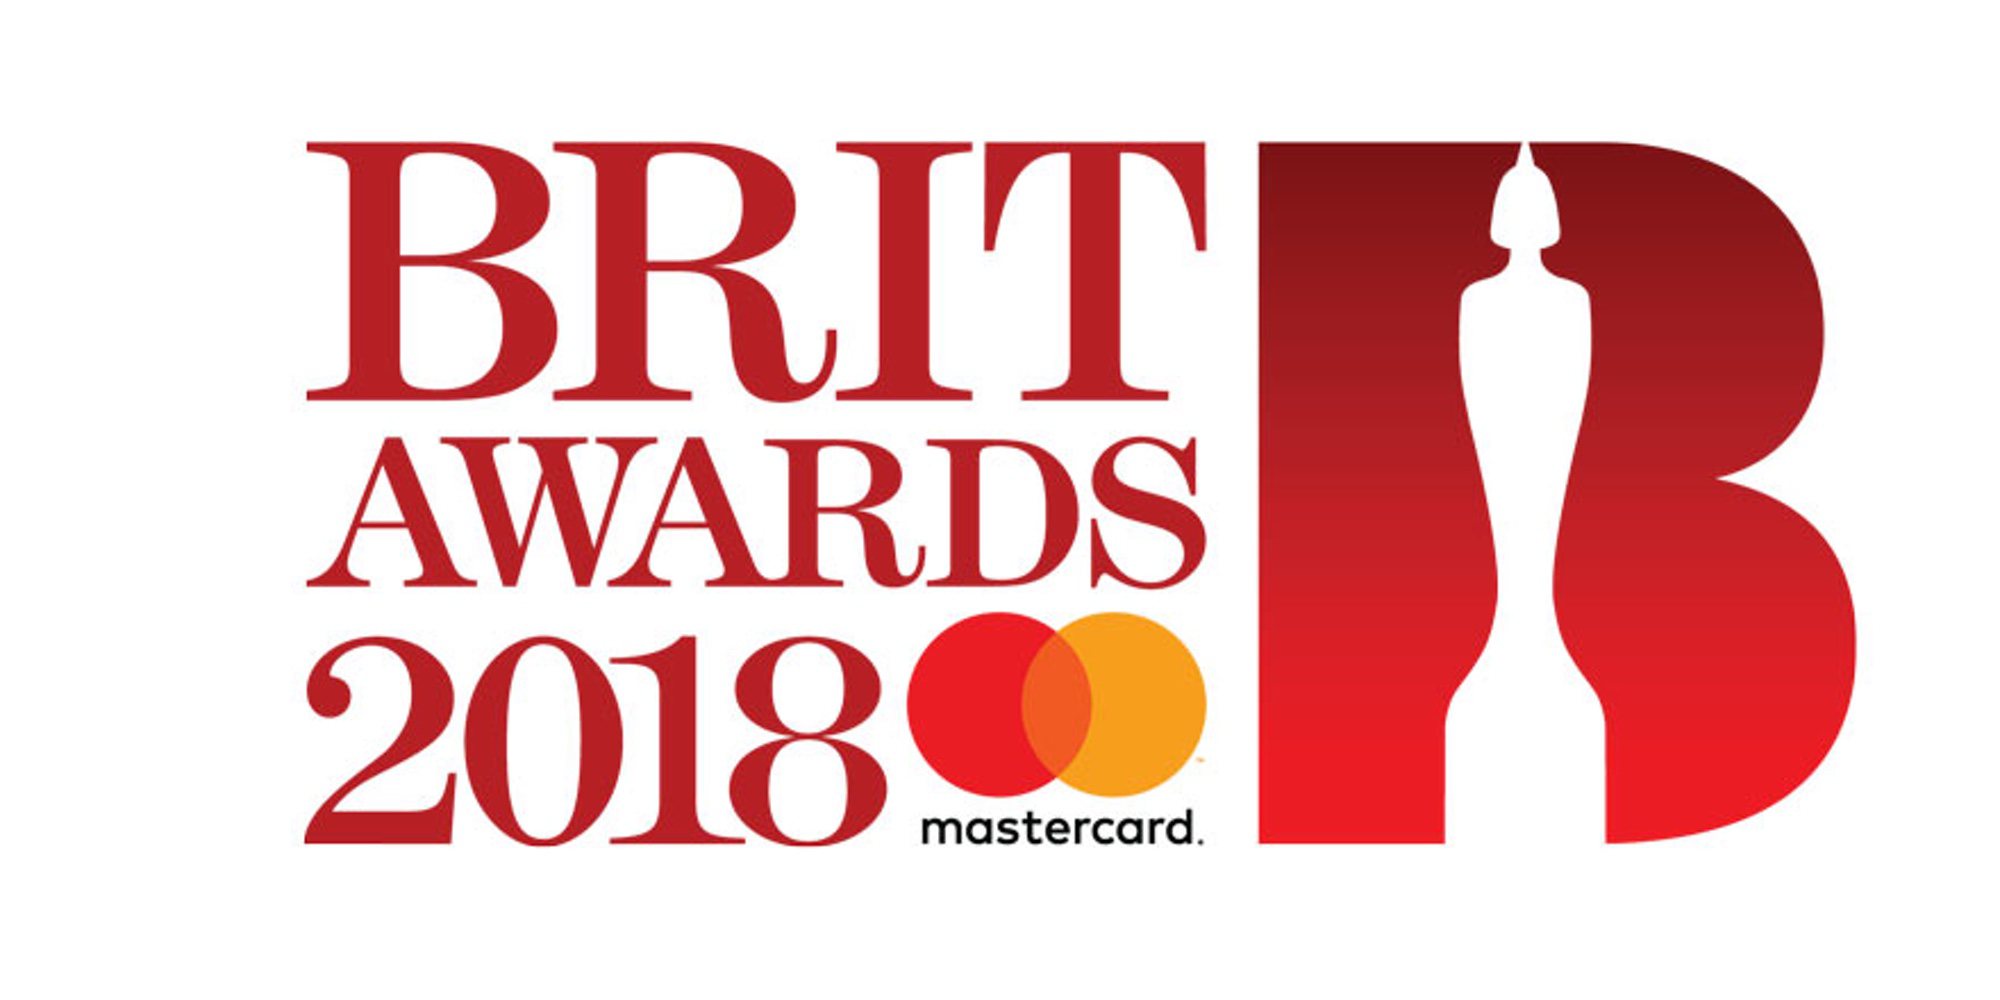 Lista completa de ganadores de los Brit Awards 2018